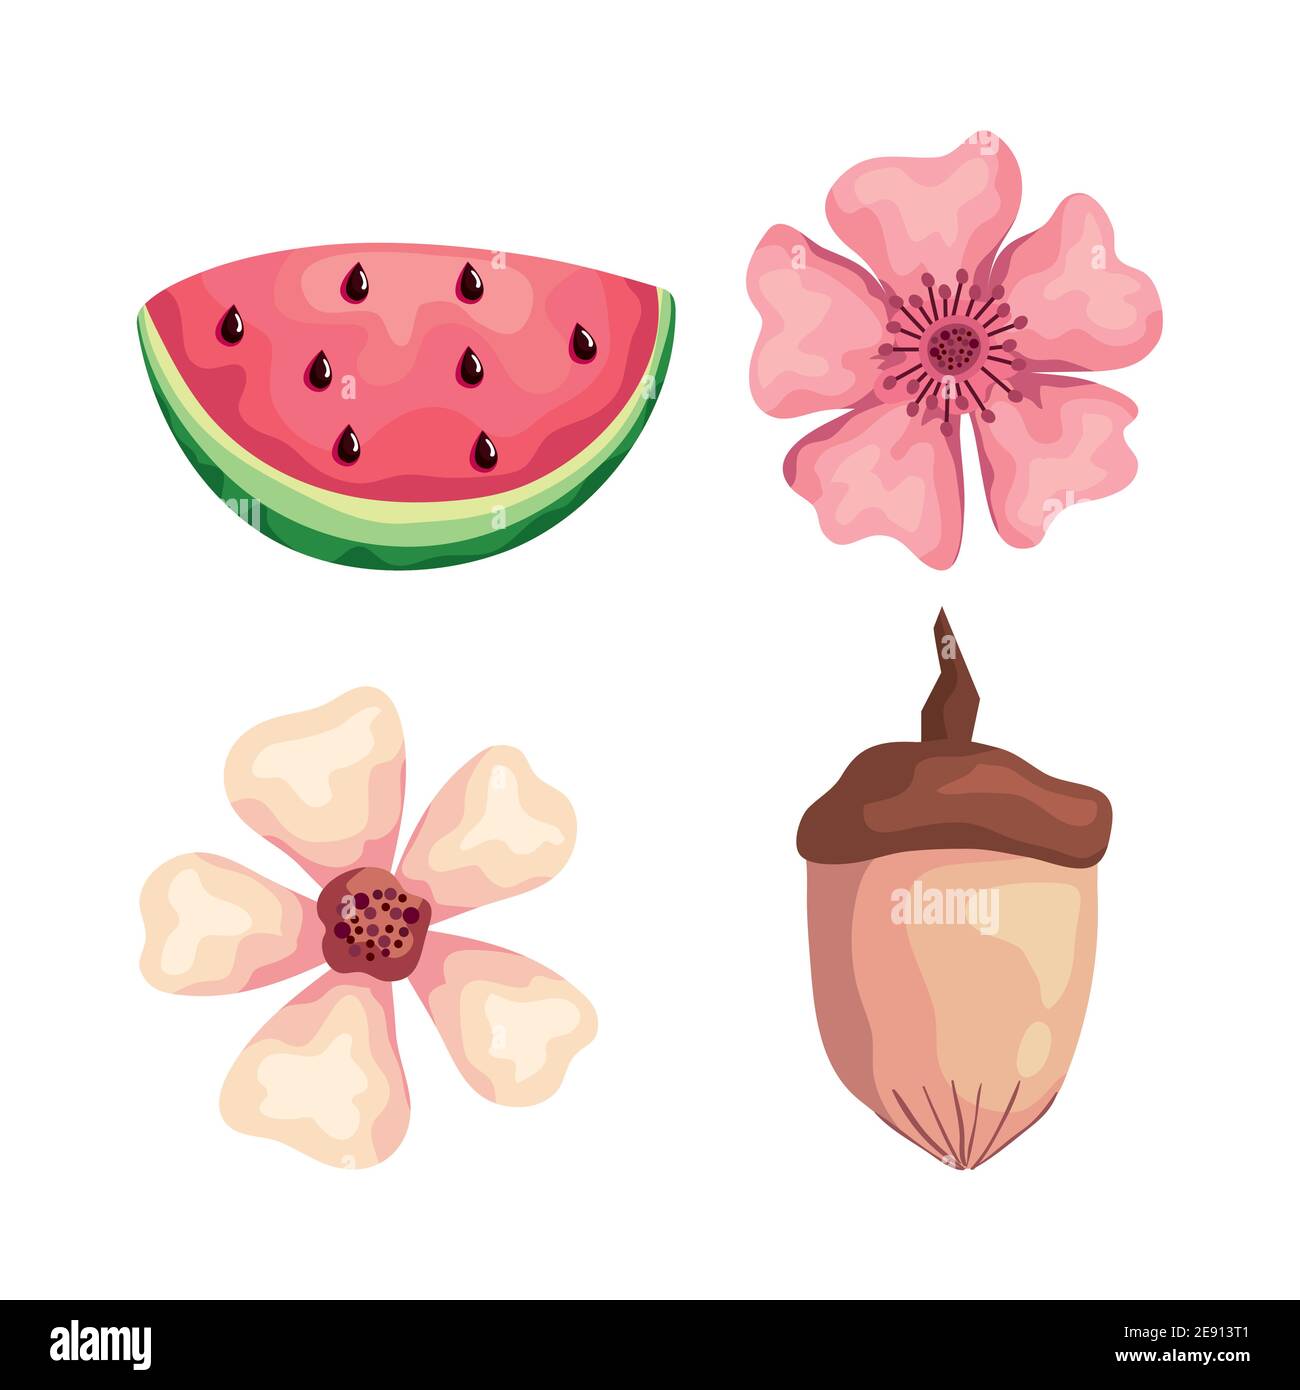 Schöne Blumen mit Wassermelone und Nuss Stock-Vektorgrafik - Alamy